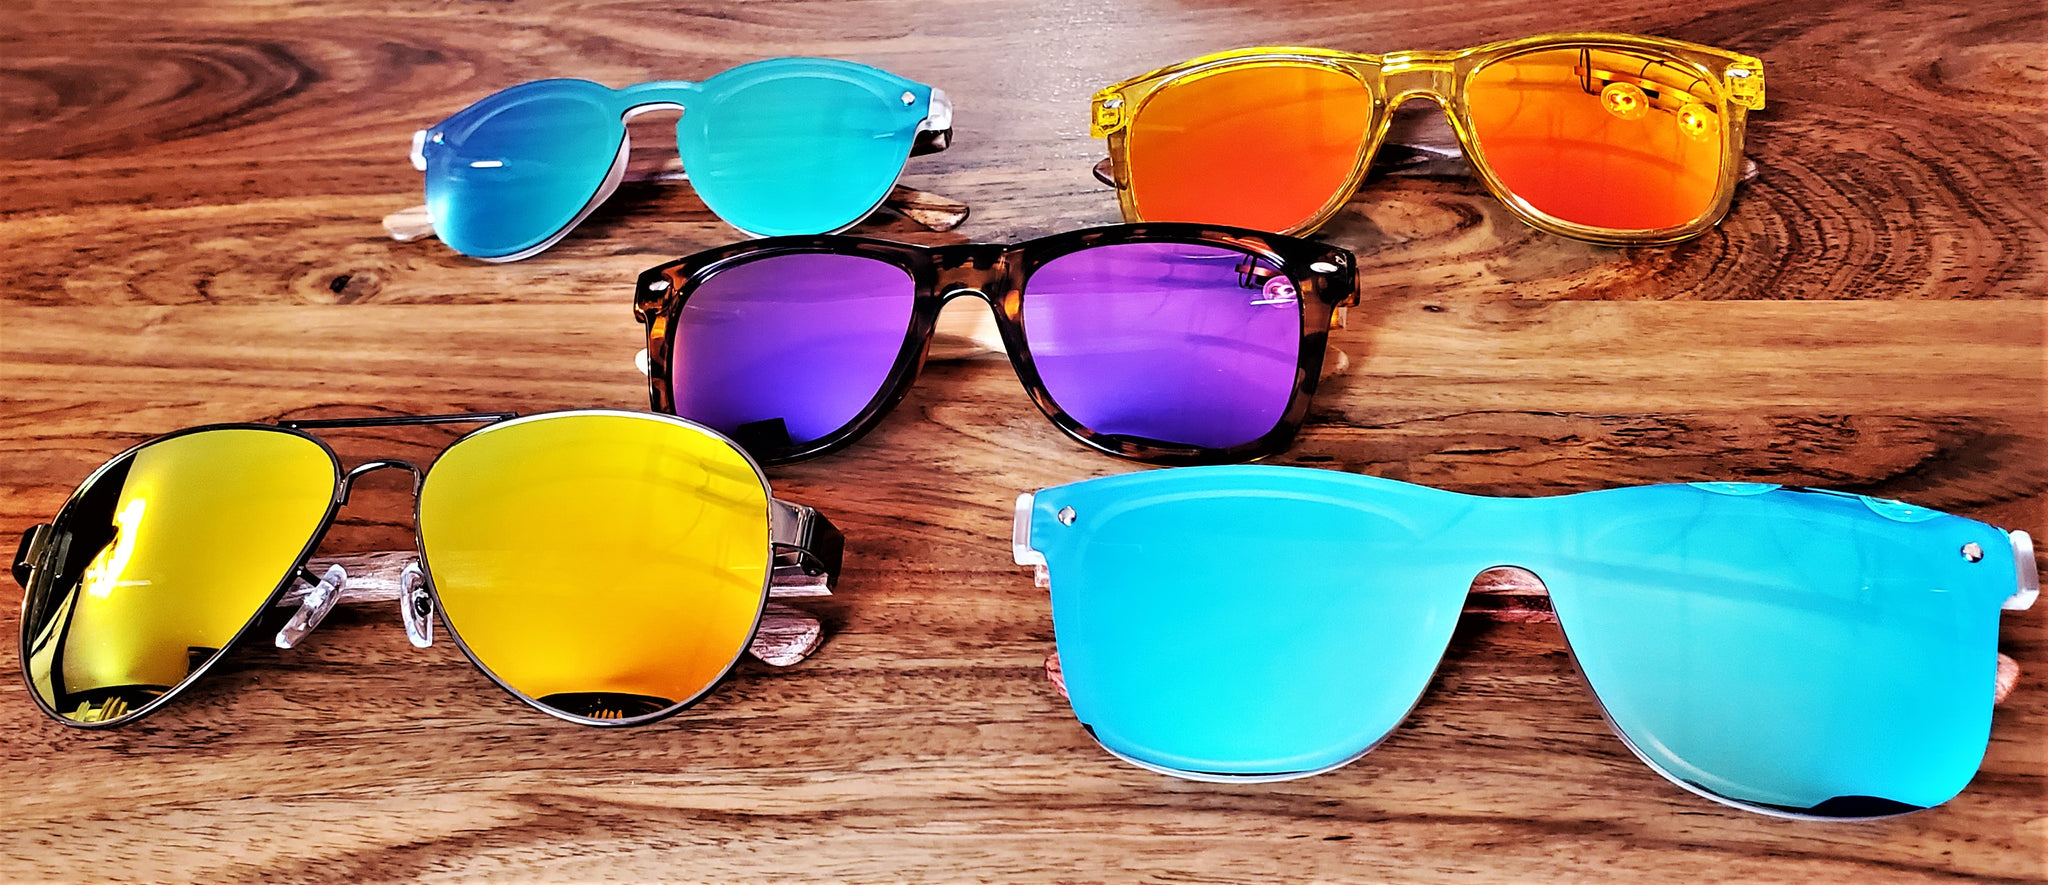 Polarized Sunglasses - Your Future's So Bright – Ready Fest Go